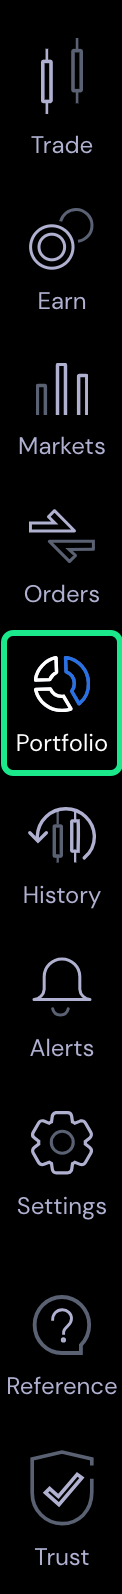 Portfolio tab in left-hand navigation.png